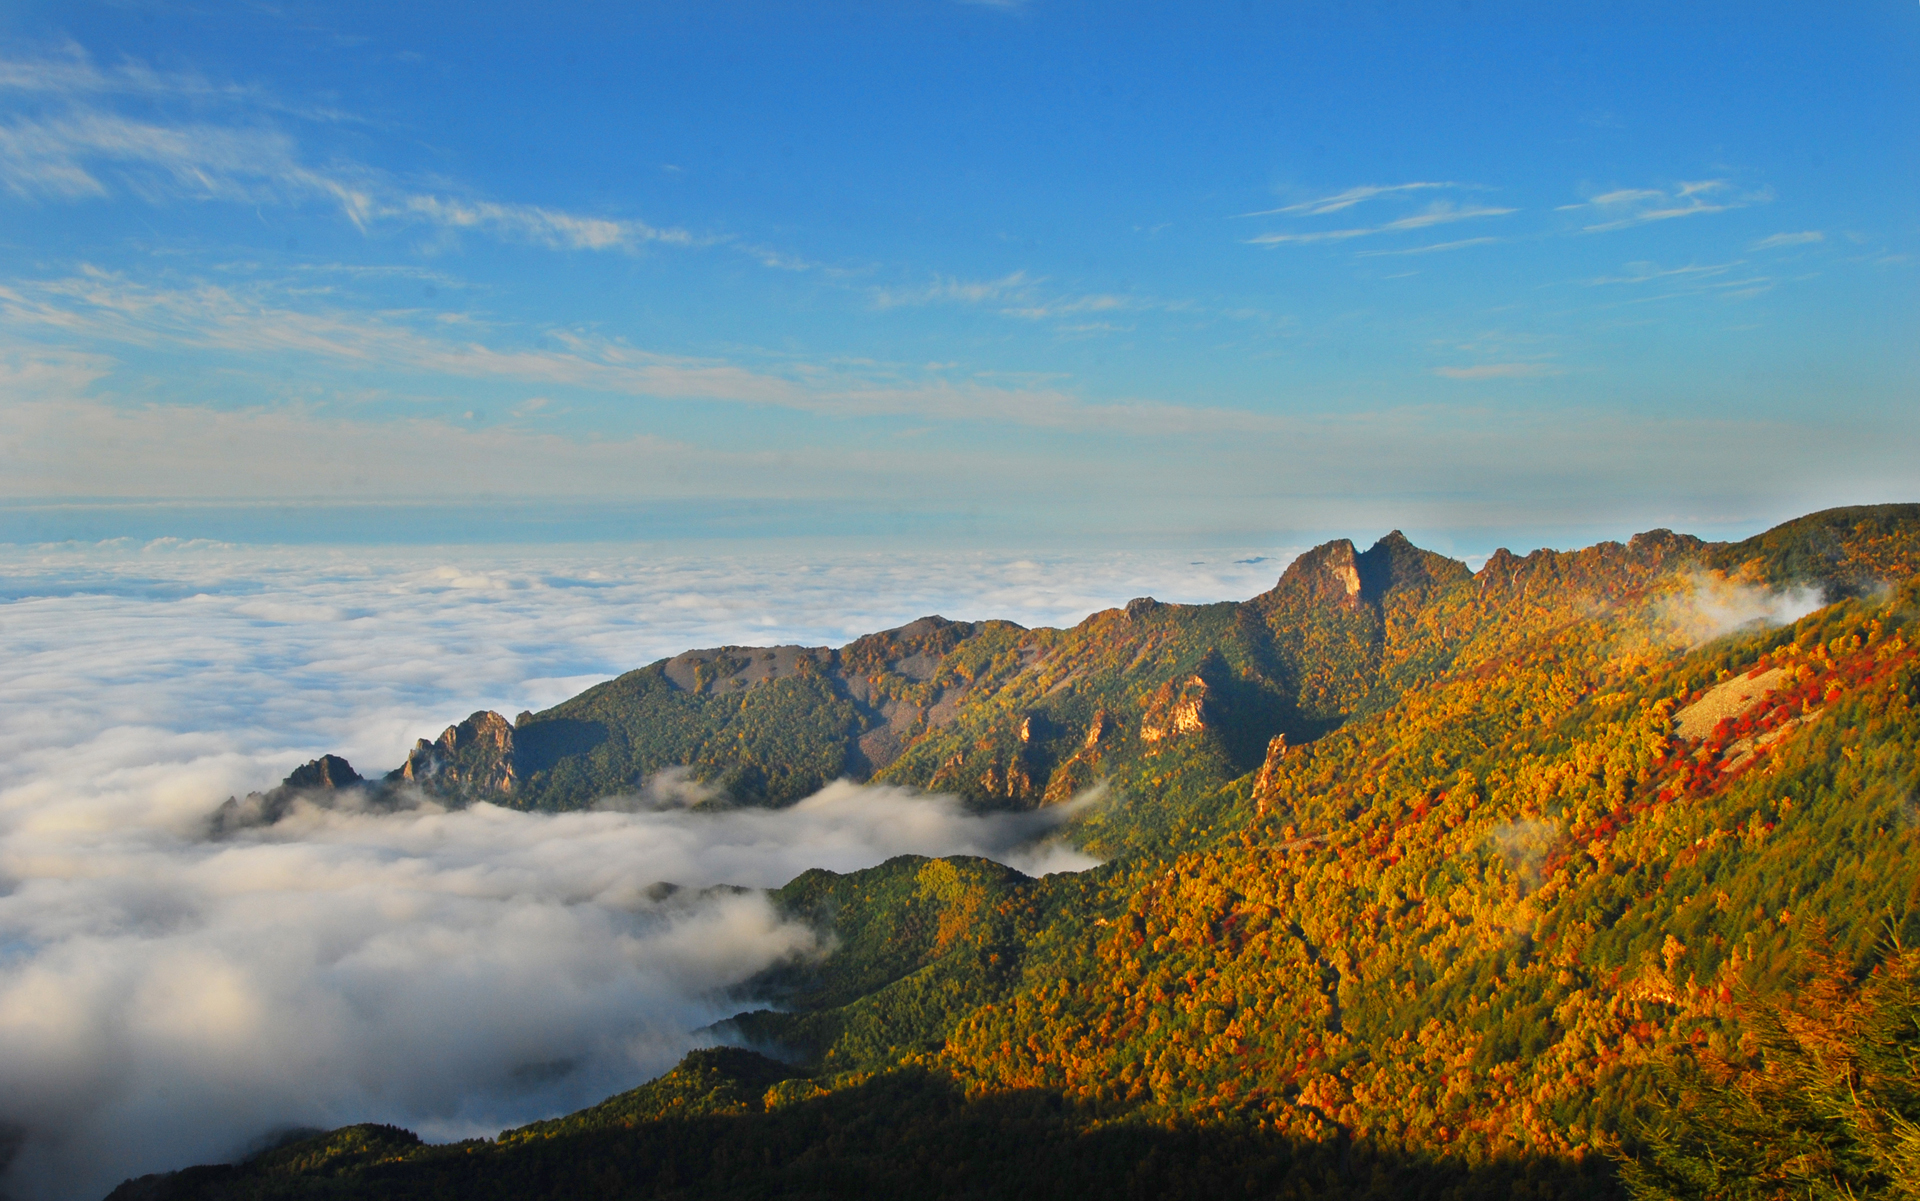 【携程攻略】江苏灵山胜境景点,灵山是个风景秀美的地方，沿途经过十里明珠堤，公路在青山中穿行。灵…